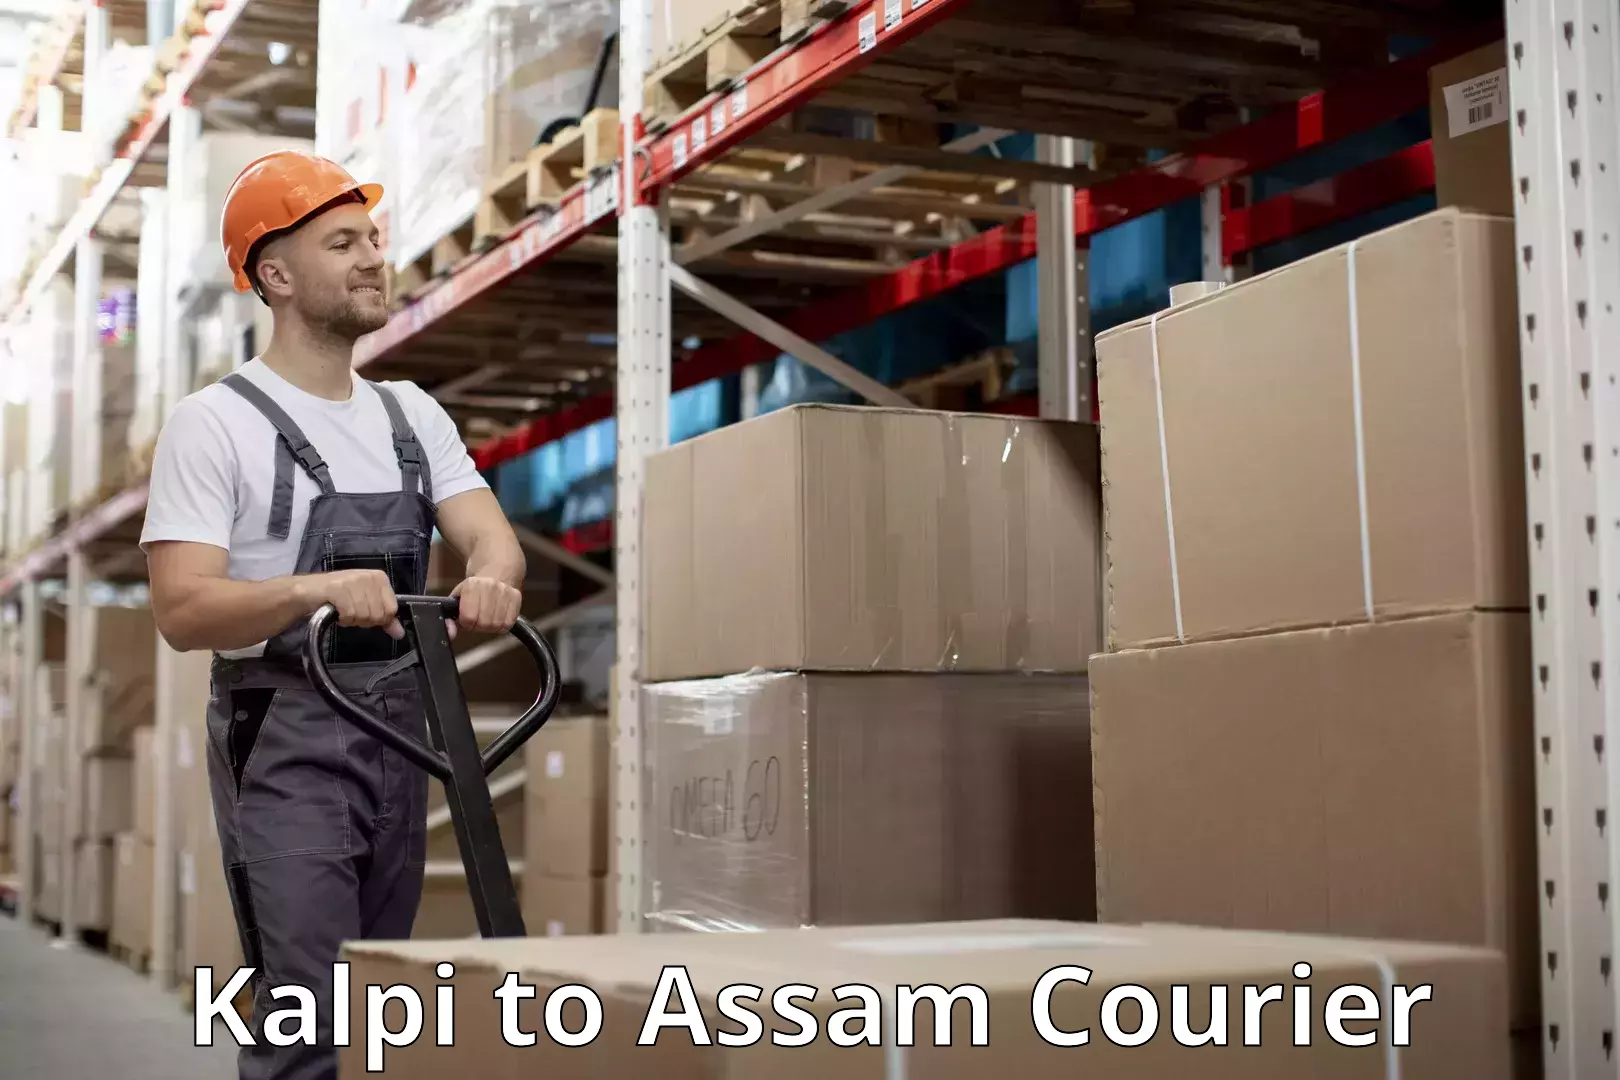 Baggage transport network Kalpi to Assam